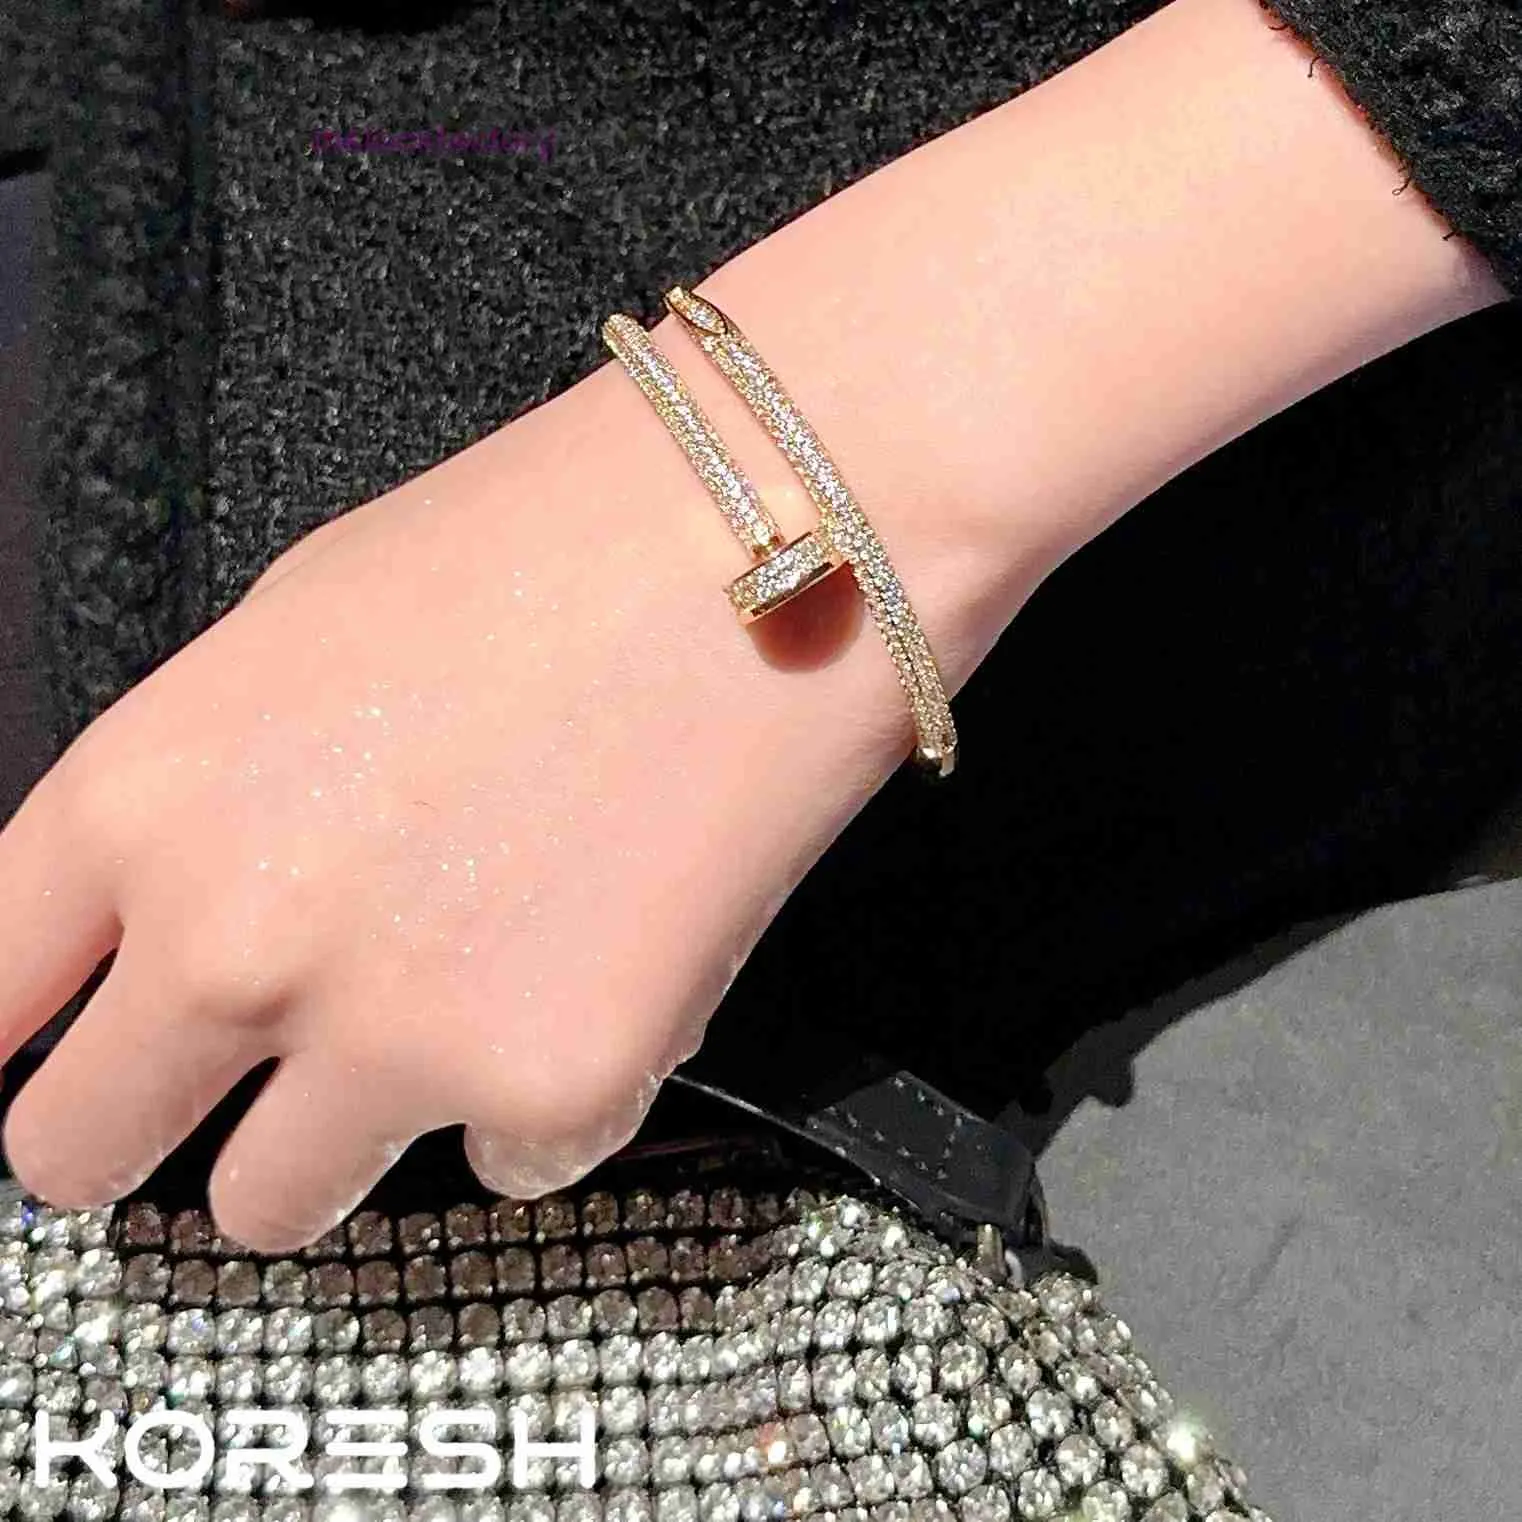 Оригинальный браслет 1to1 Cartres Высококачественное позолоченное кольцо со звездами и браслет с отверстием для гвоздя, уникальный и универсальный, легкий, роскошный, можно носить друг с другом LXIA